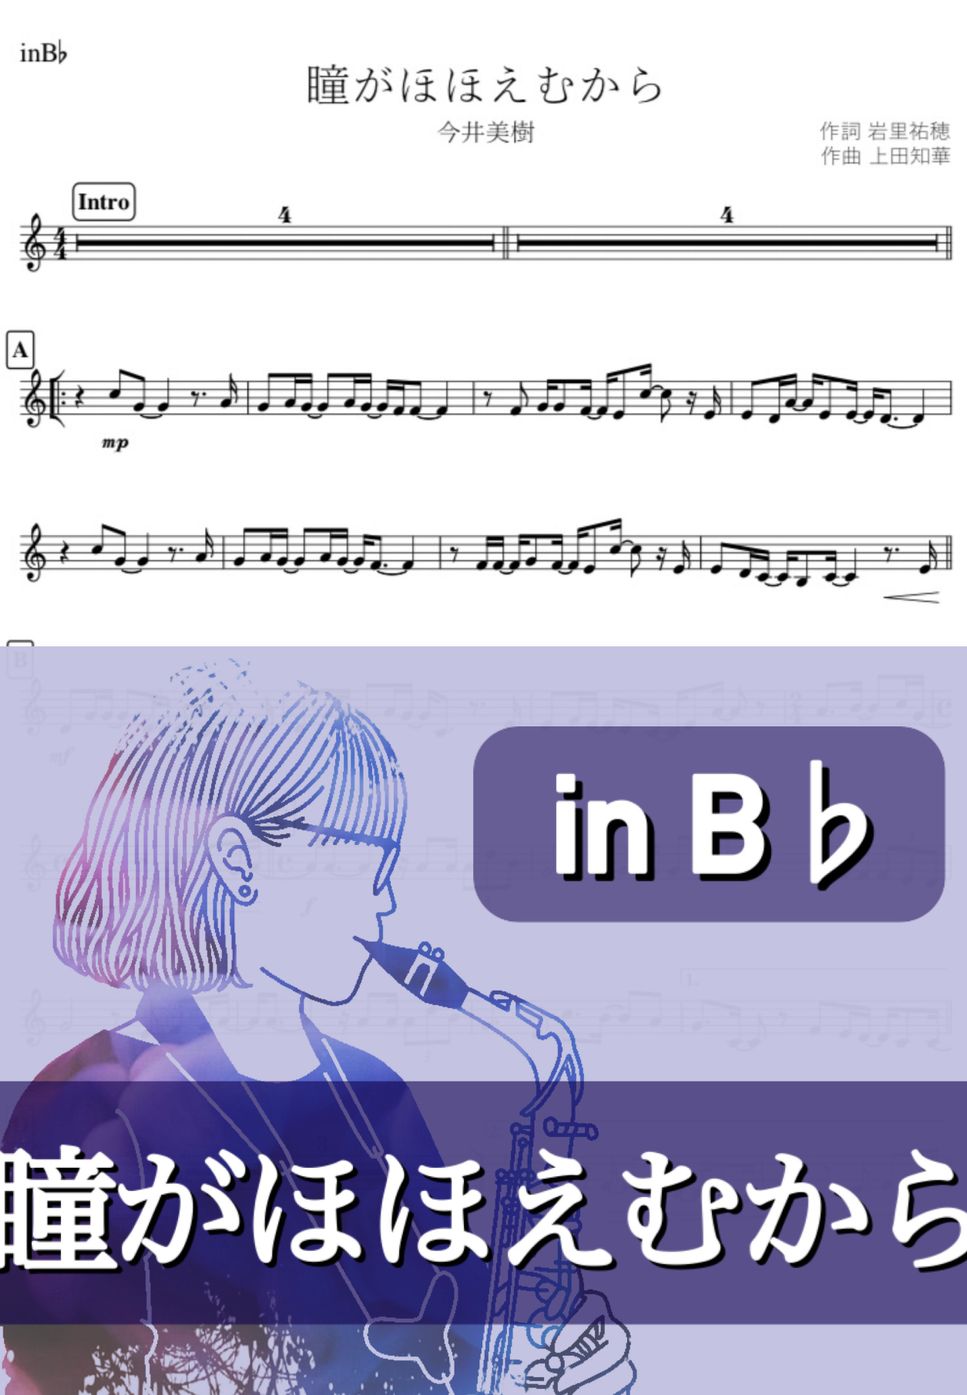 今井美樹 - 瞳がほほえむから (B♭) by kanamusic